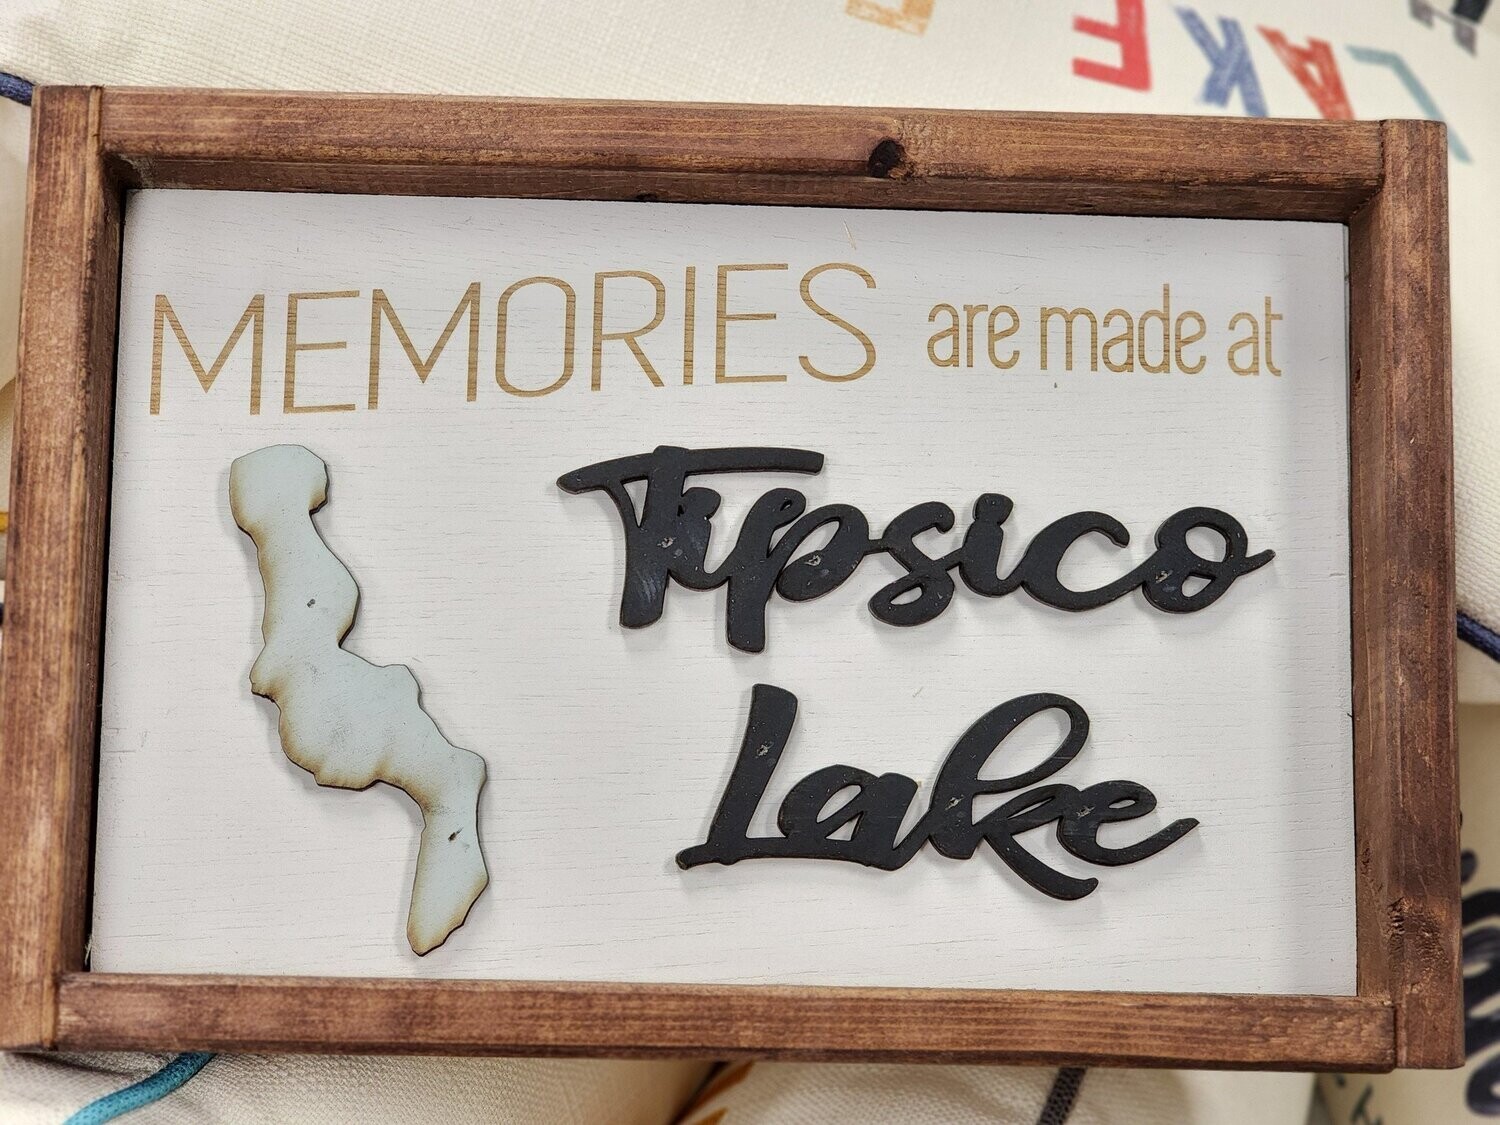 MEMORIES AT TIPSICO LAKE